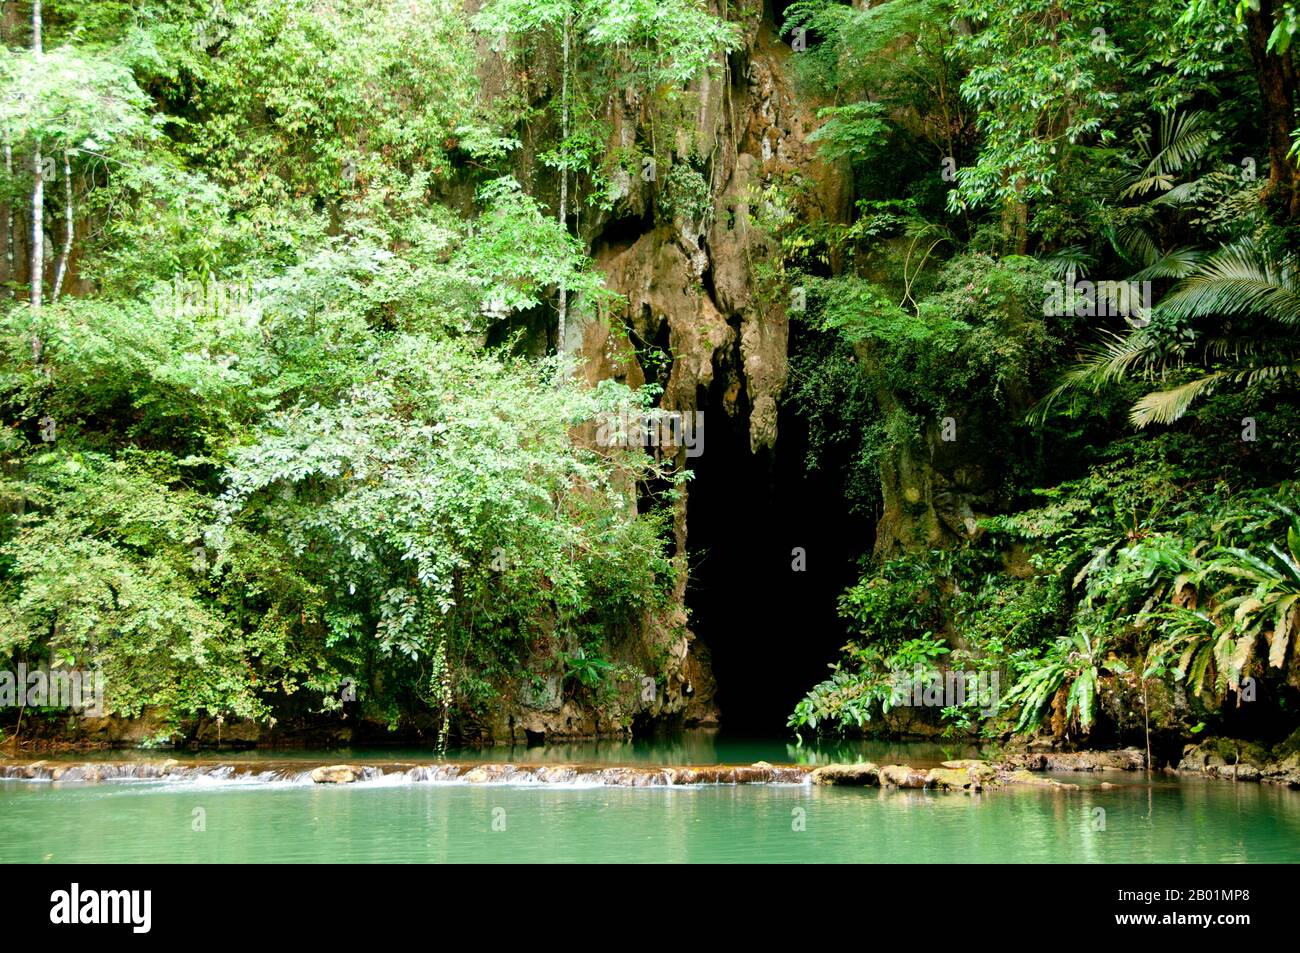 Thailandia: Ingresso alle grotte in una delle numerose piscine color smeraldo del parco, rispetto al Bokkharani National Park, provincia di Krabi. Il Parco Nazionale di Than Bokkharani si trova nella provincia di Krabi a circa 45 chilometri (28 miglia) a nord-ovest della città di Krabi. Il parco copre un'area di 121 chilometri quadrati (47 miglia quadrate) ed è caratterizzato da una serie di affioramenti calcarei, foreste pluviali sempreverdi, foreste di mangrovie, torbiere e molte isole. Ci sono anche numerose grotte e complessi rupestri con alcune spettacolari stalagmiti e stalattiti. Il Bokkharani è incentrato su due famose grotte, Tham Lot e Tham Phi Hua. Foto Stock